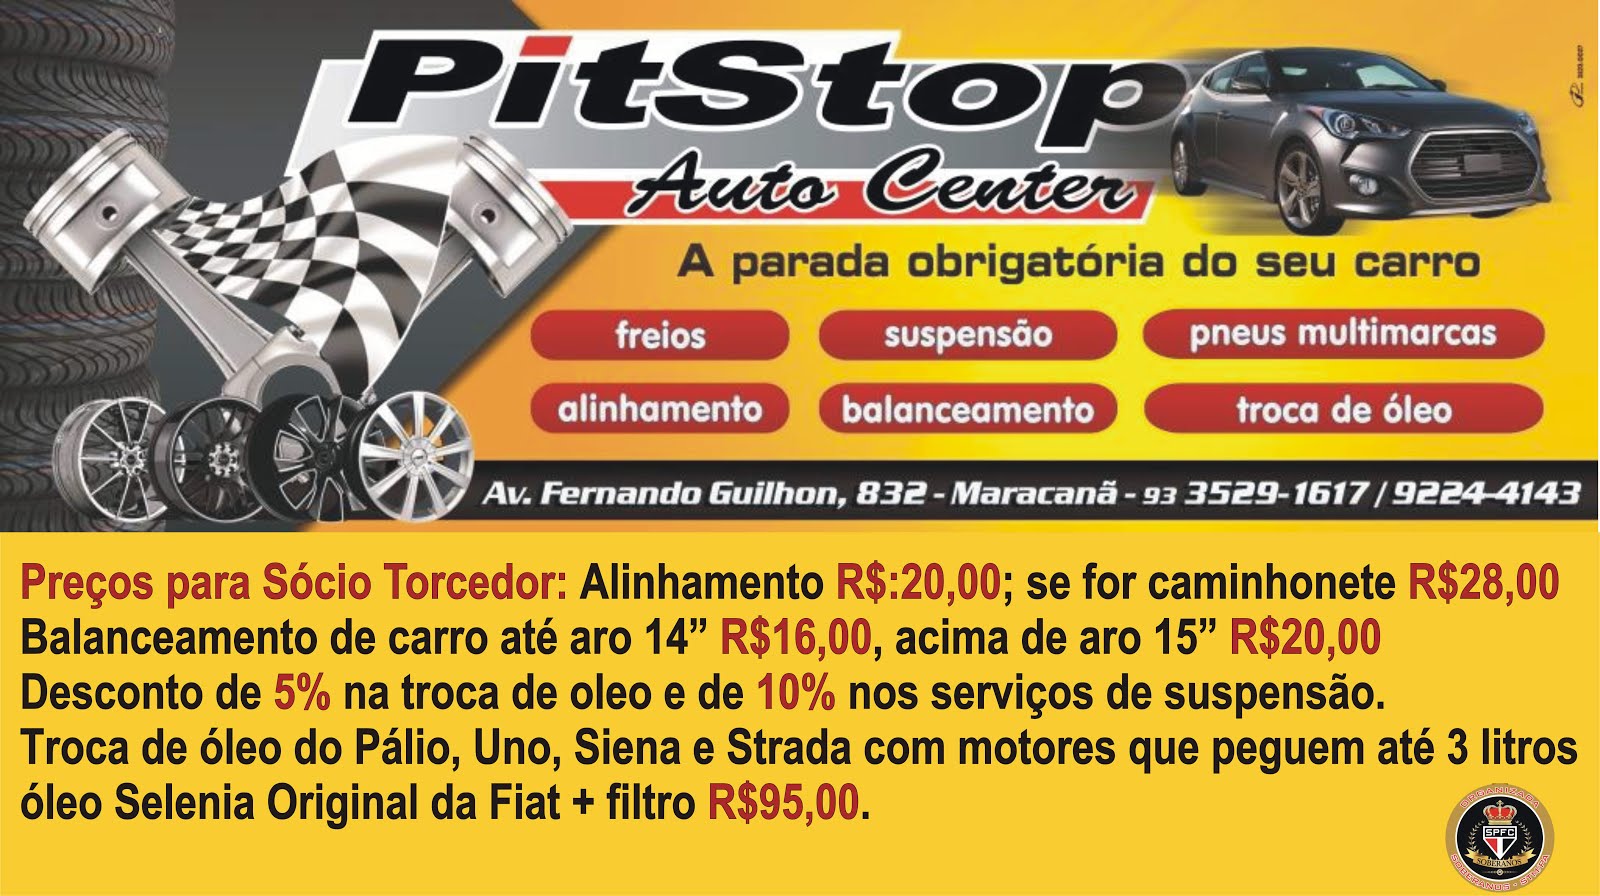 PitStop Auto Center